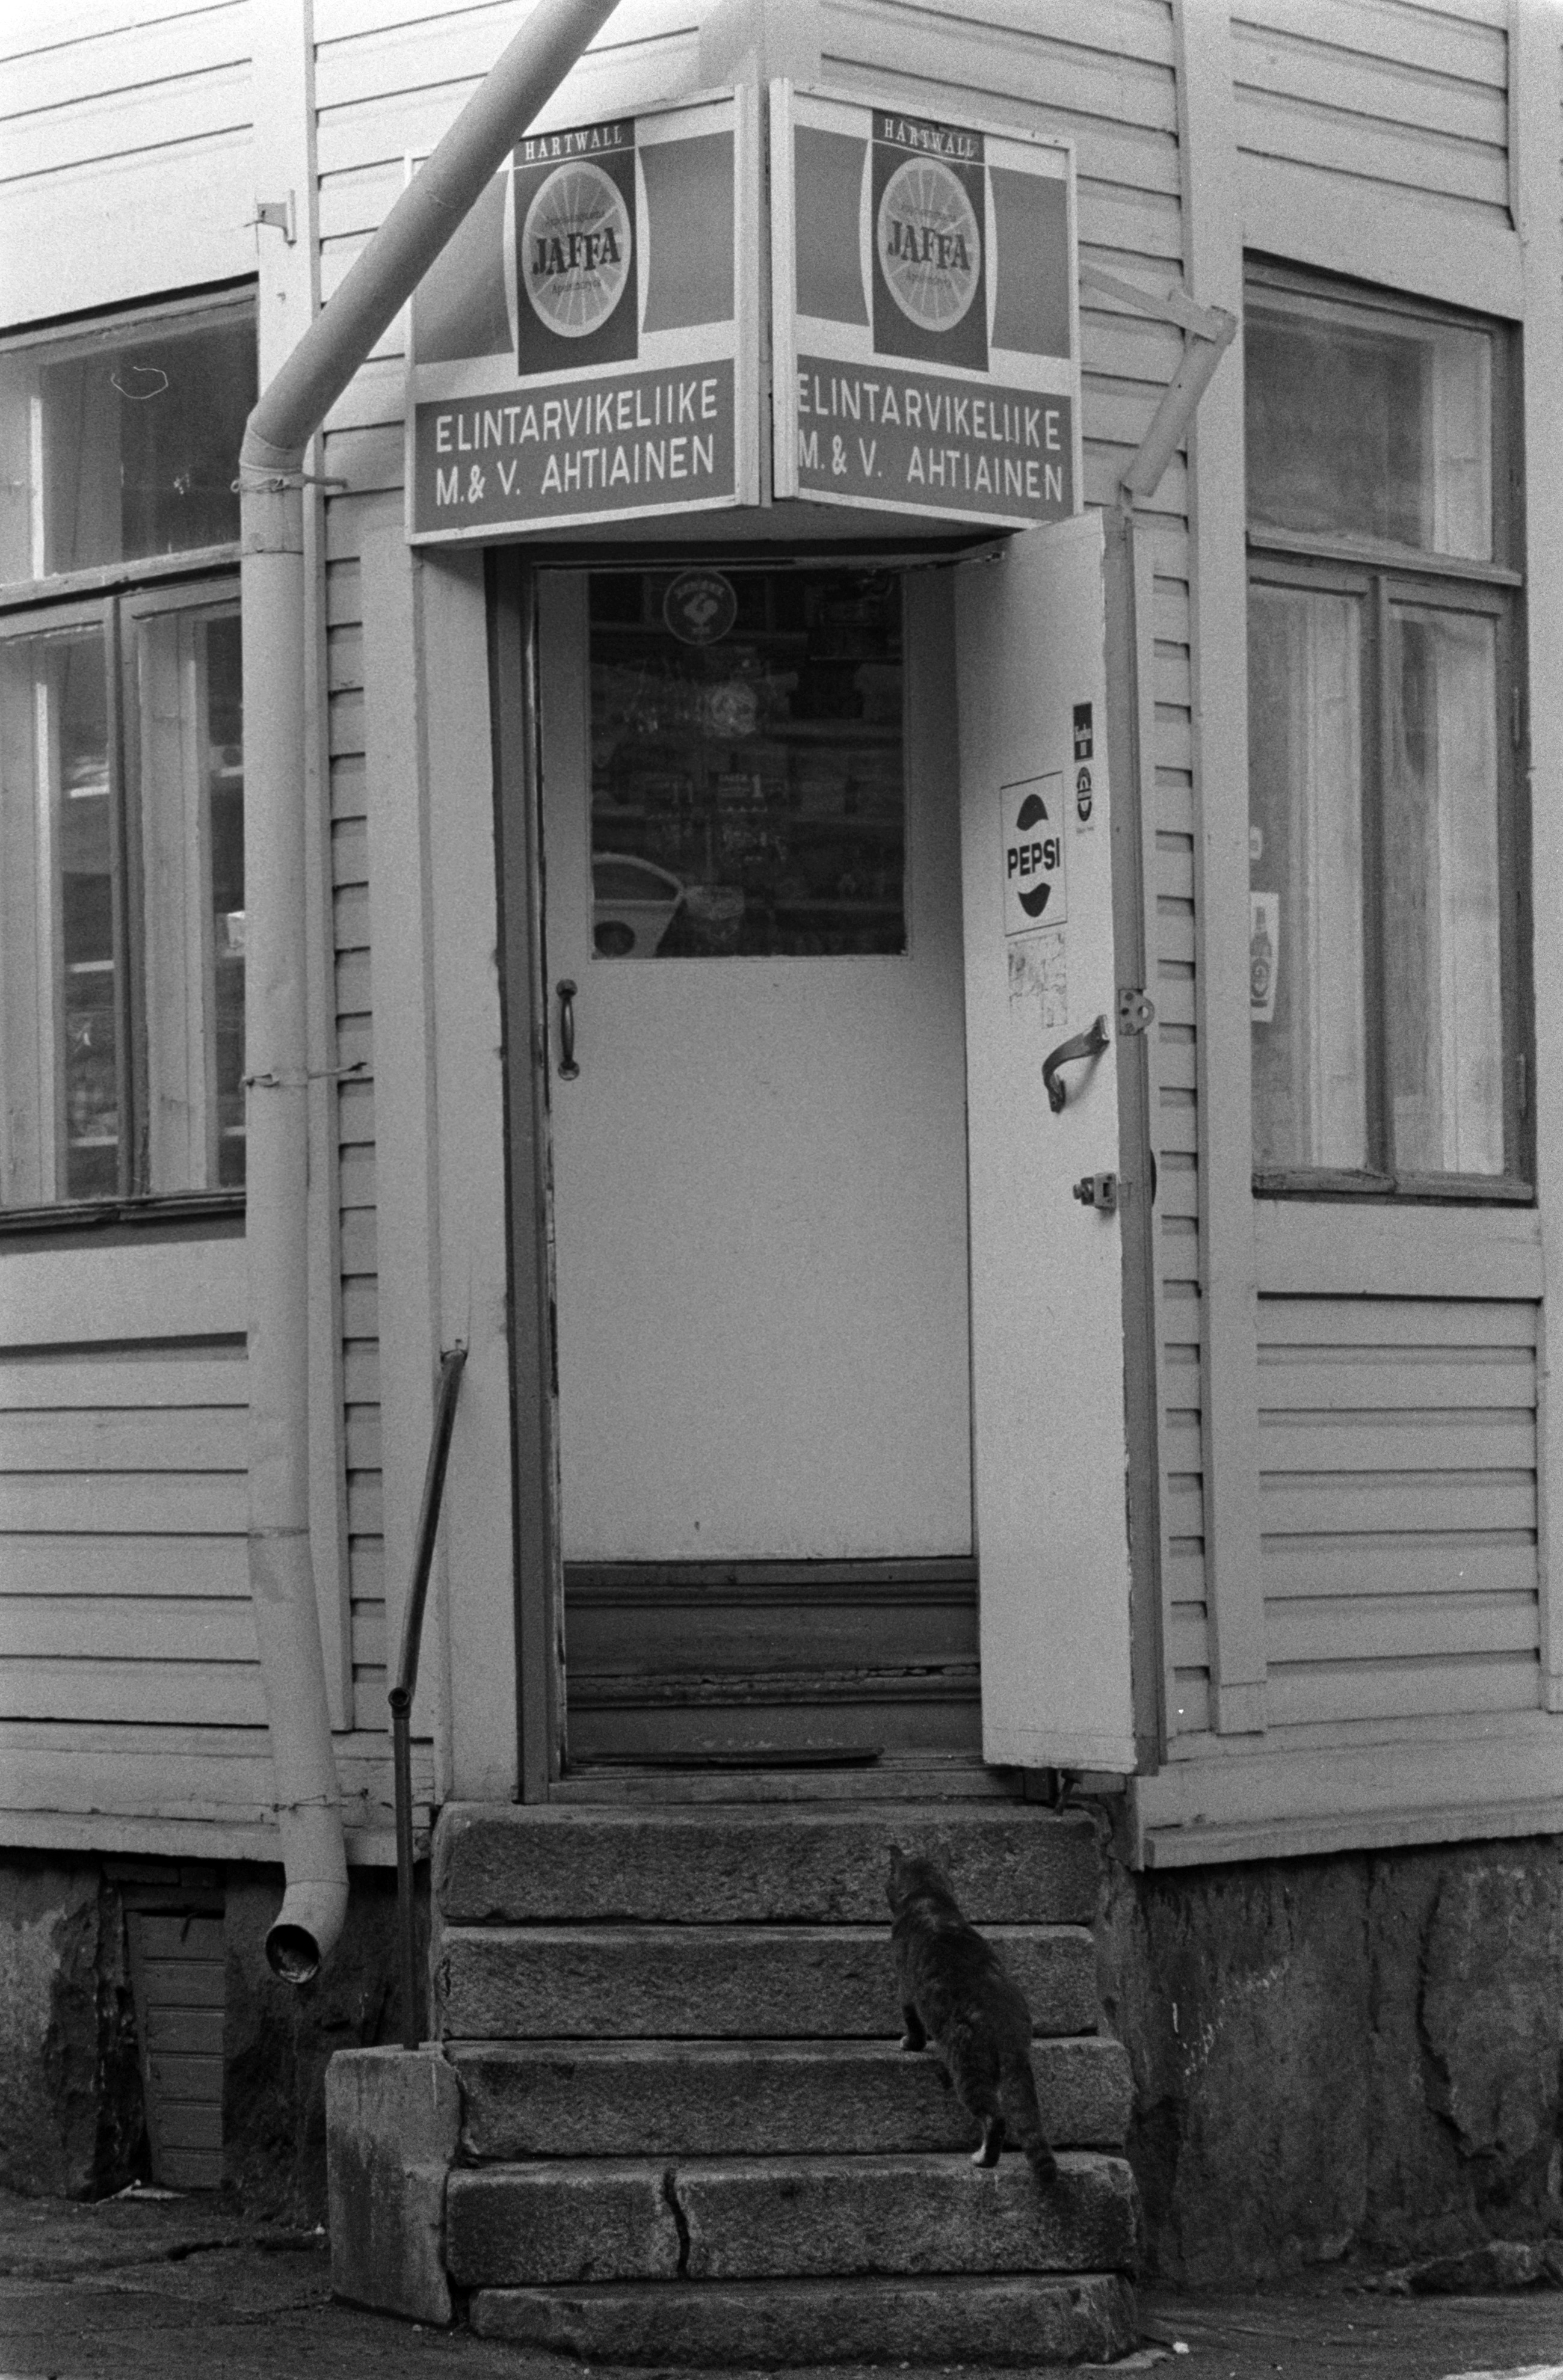 Elintarvikeliike M & V. Ahtiainen Vallilantien ja Keuruuntien kulmassa sijaitsevassa puutalossa Puu-Vallilassa. Kissa kiipeää portaita pitkin kohti liikkeen avointa ovea.